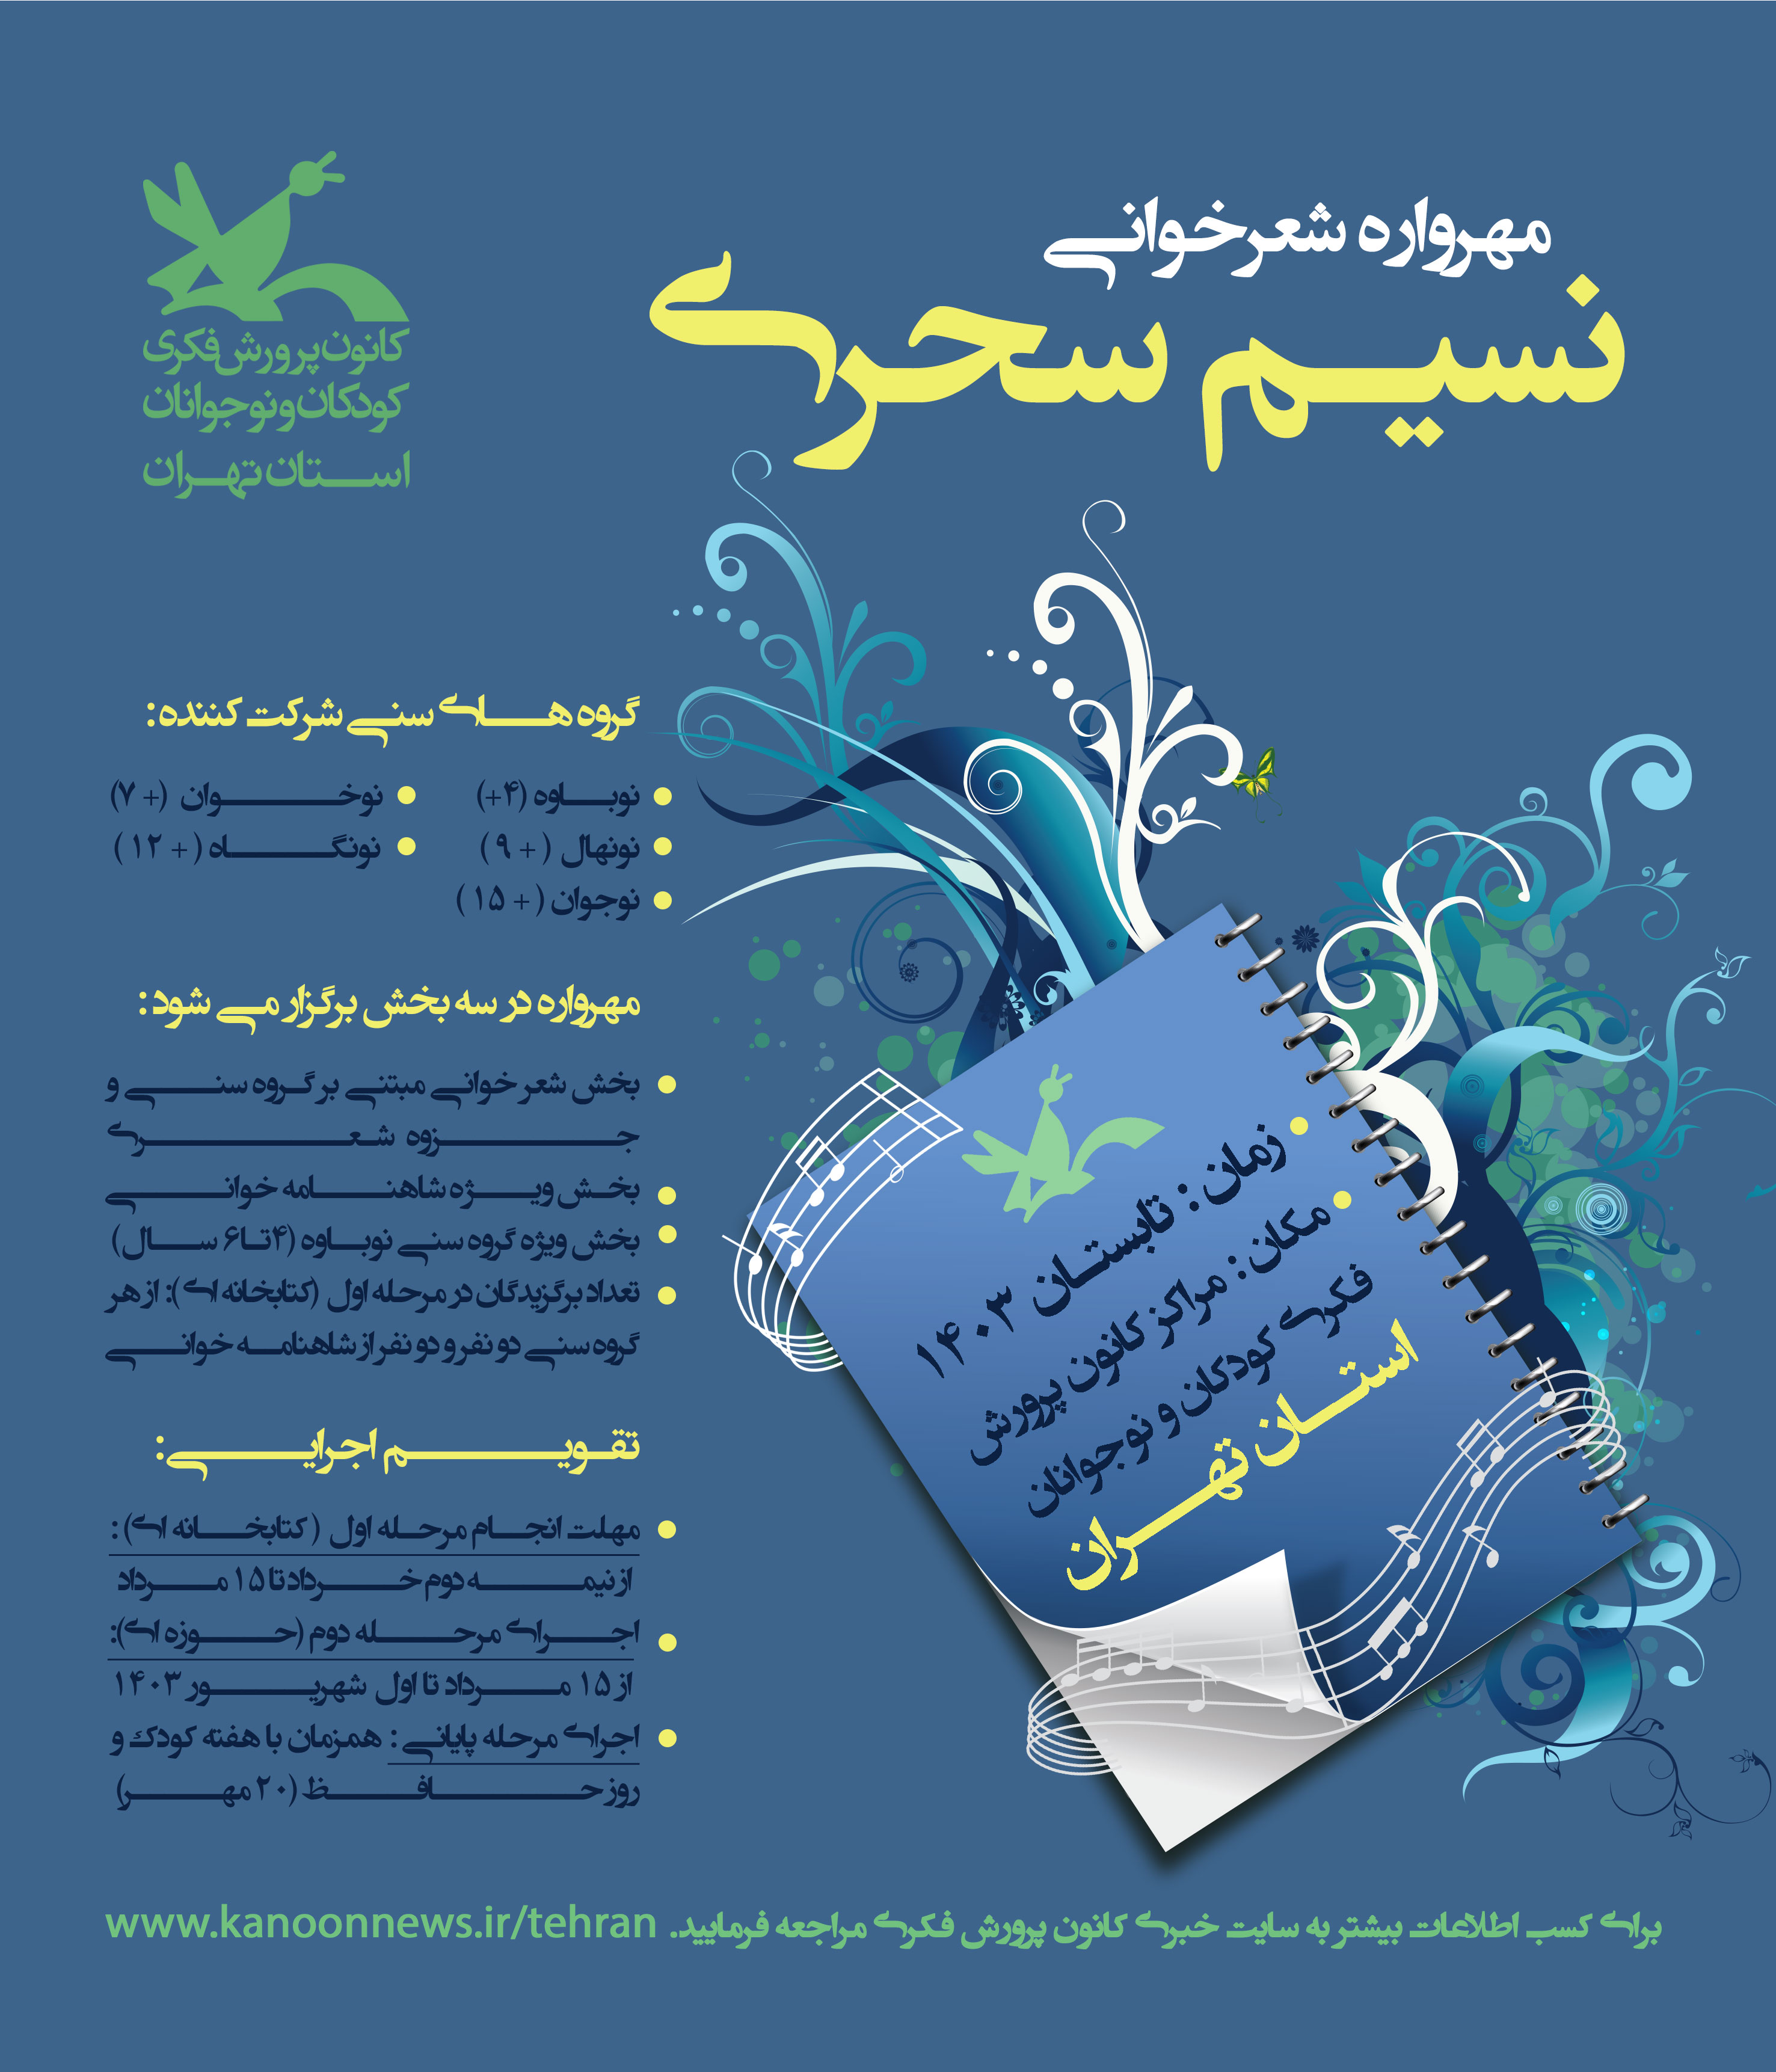 مهرواره ادبی «نسیم سحری» در کانون استان تهران برگزار می شود